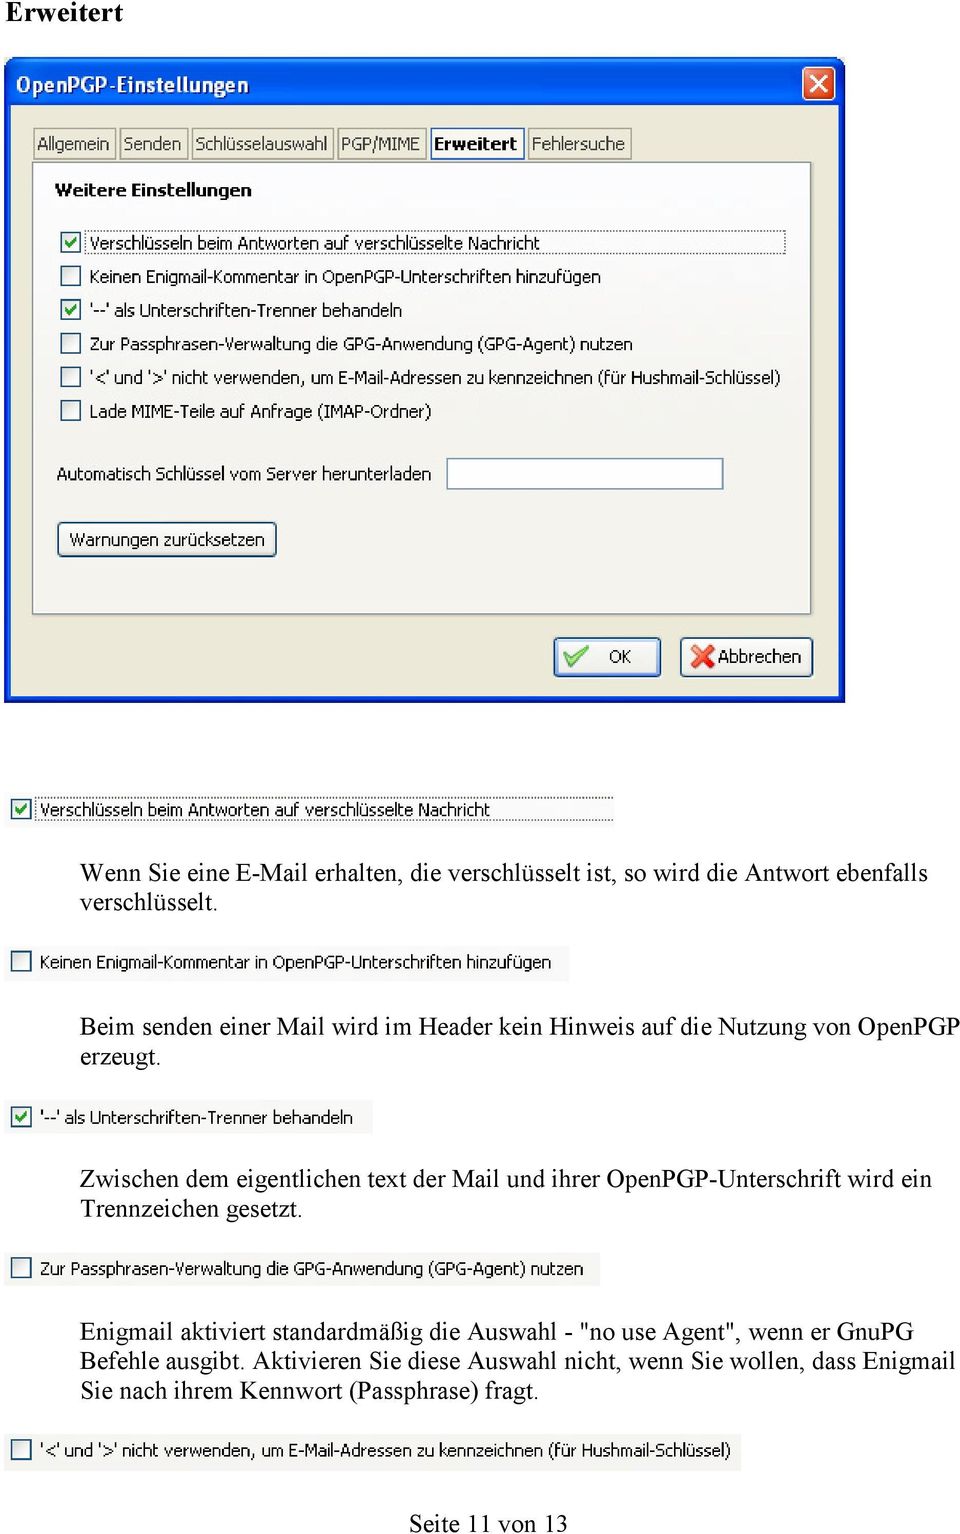 Zwischen dem eigentlichen text der Mail und ihrer OpenPGP-Unterschrift wird ein Trennzeichen gesetzt.